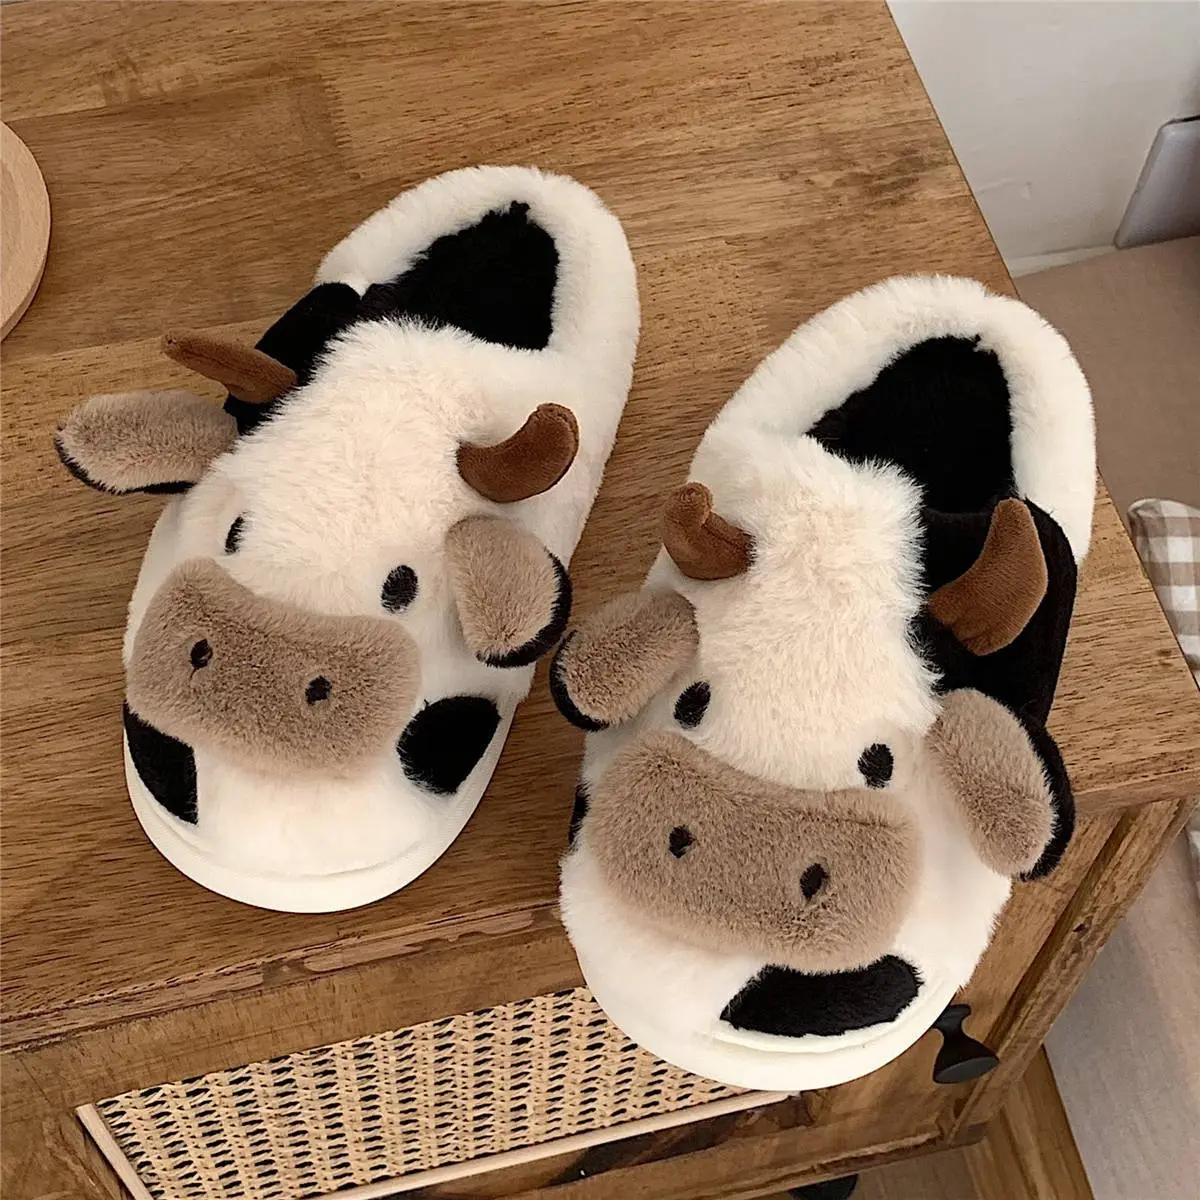 Xxxyixiतियाओ प्यारा गाय फ़ज़ी पशु प्लश चप्पल गर्म घर के अंदर सर्दियों के जूते महिलाओं के लिए सर्दियों चप्पल